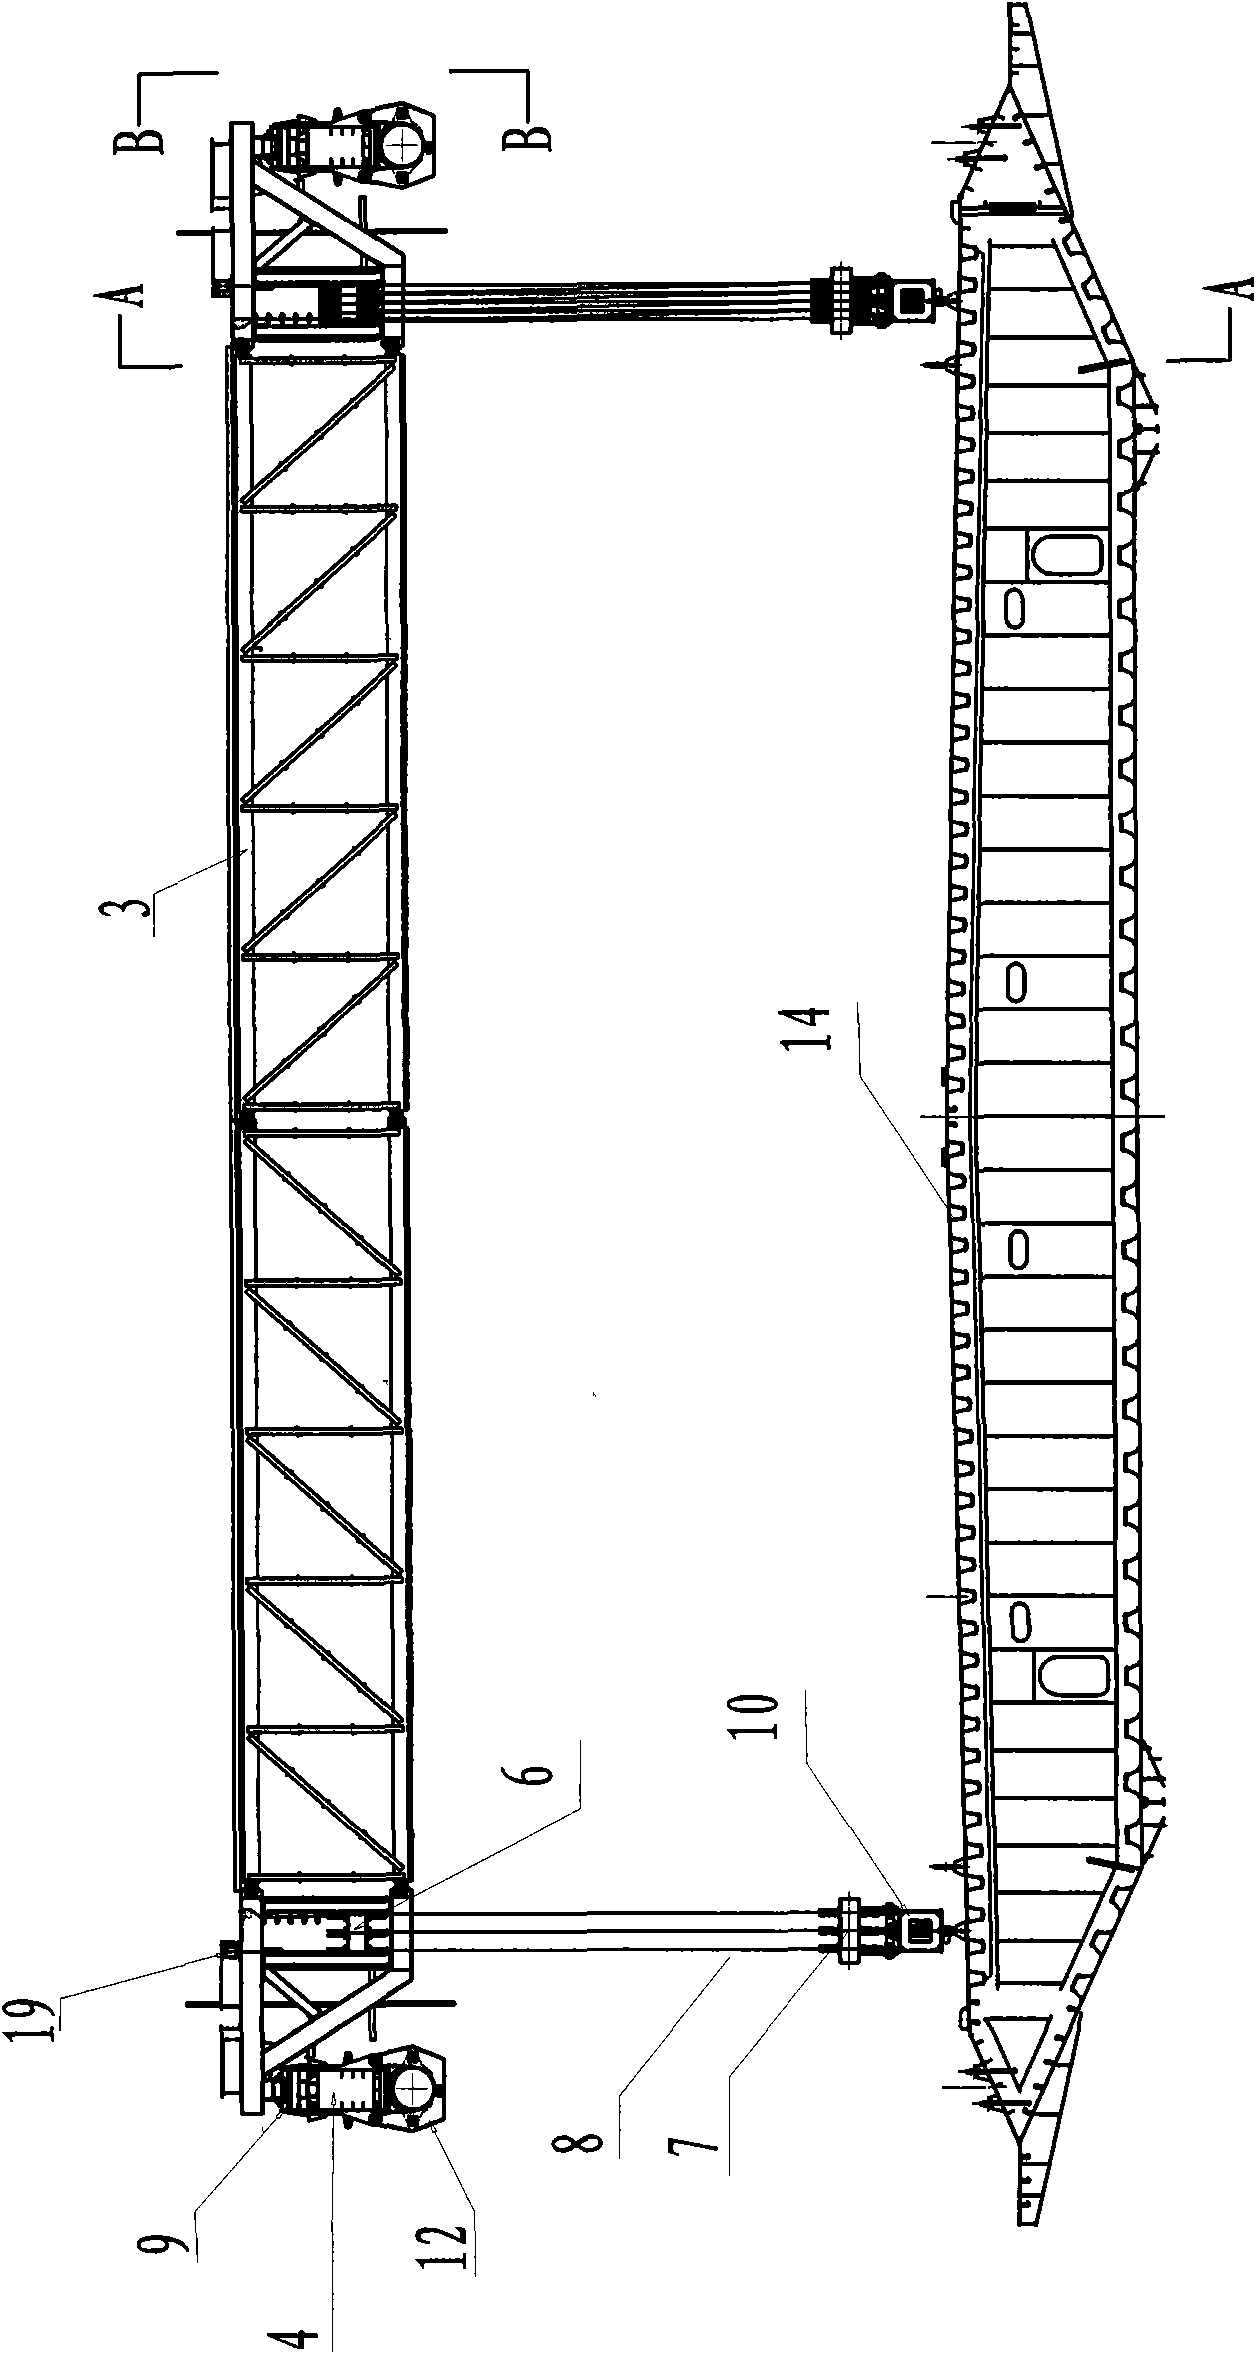 Deck unit erection gantry